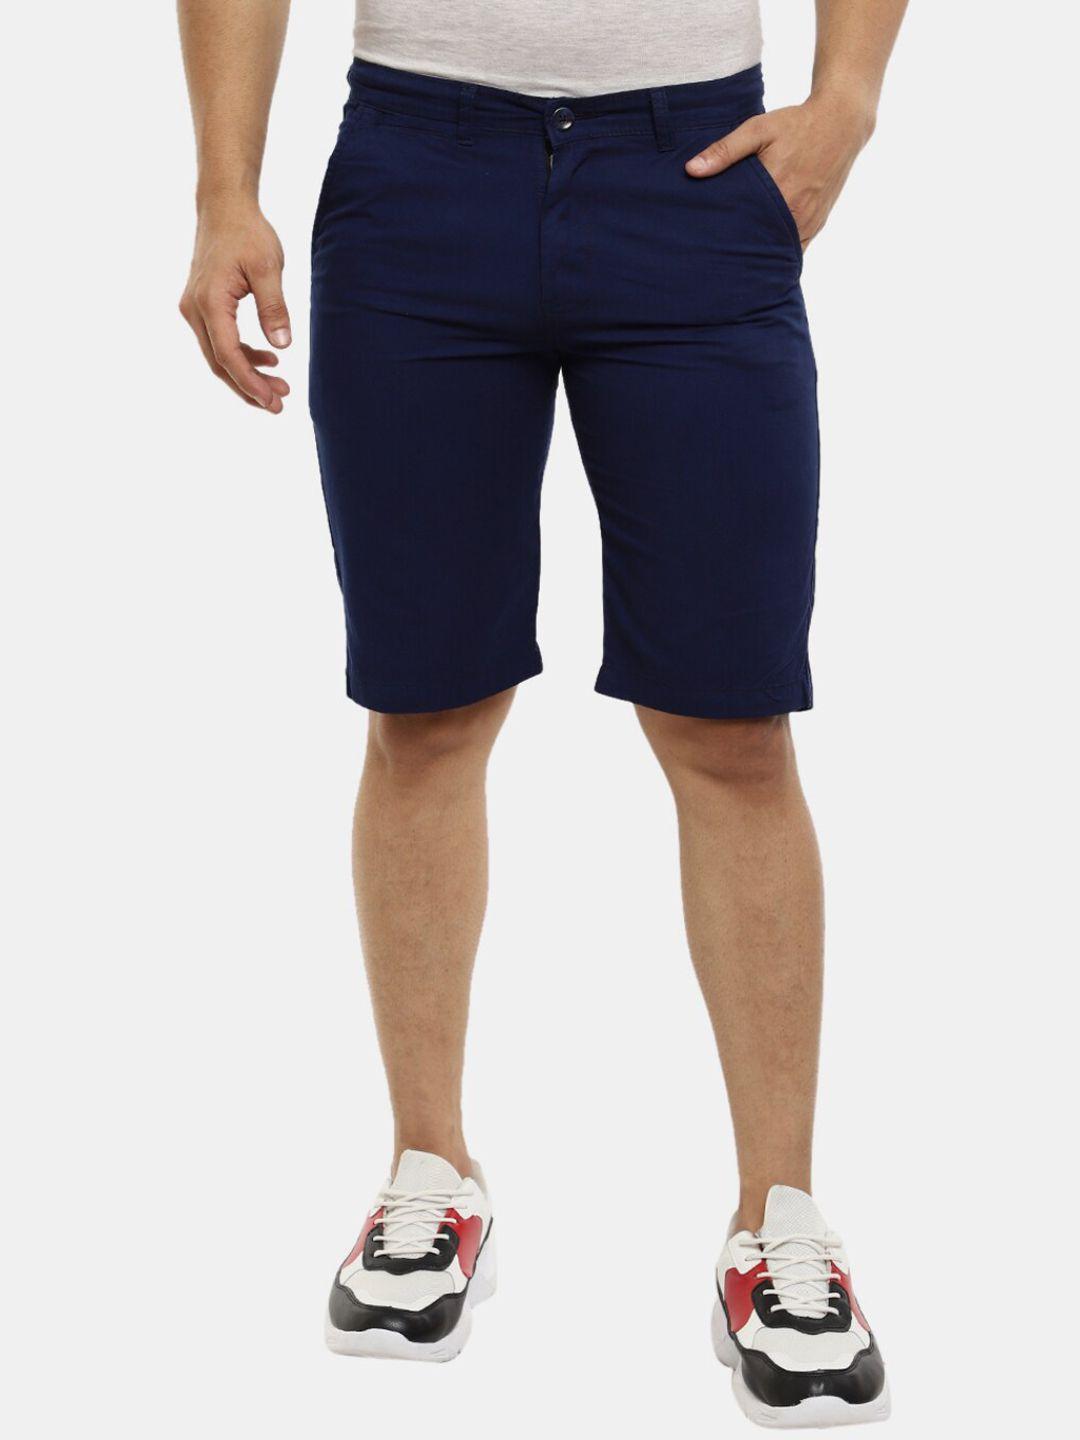 v-mart men blue shorts